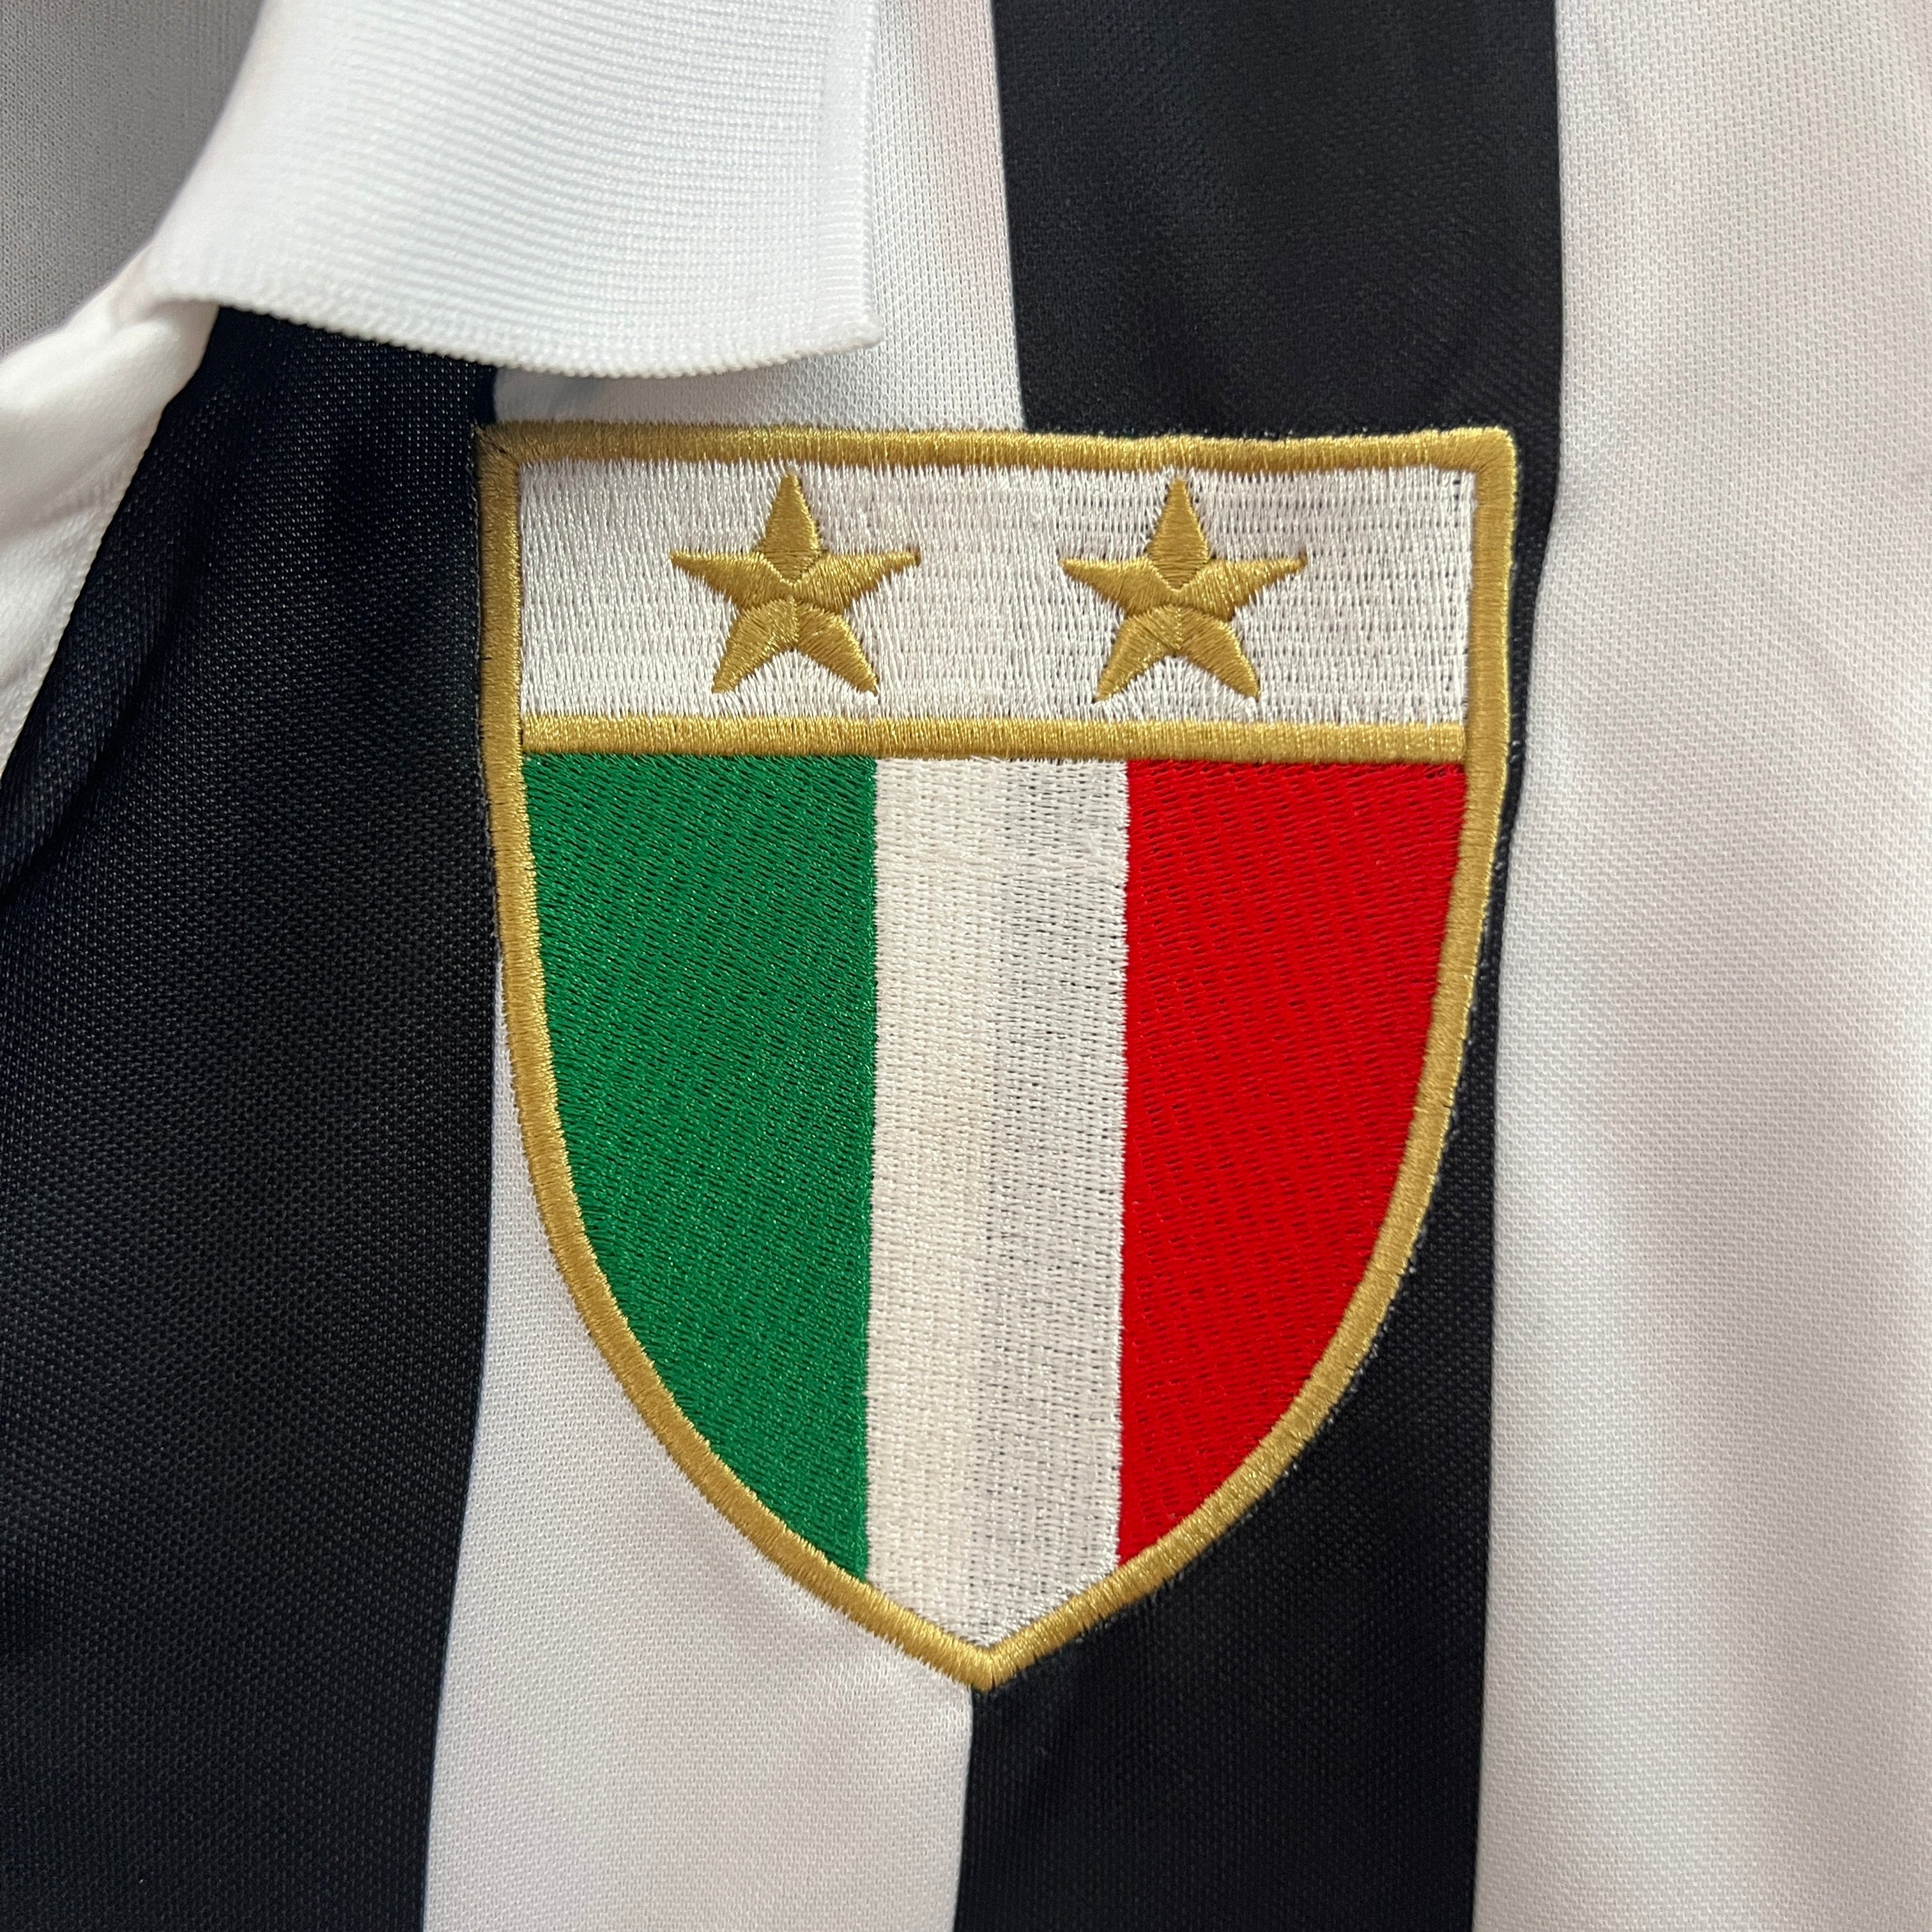 Juventus - 84/85 Vintage